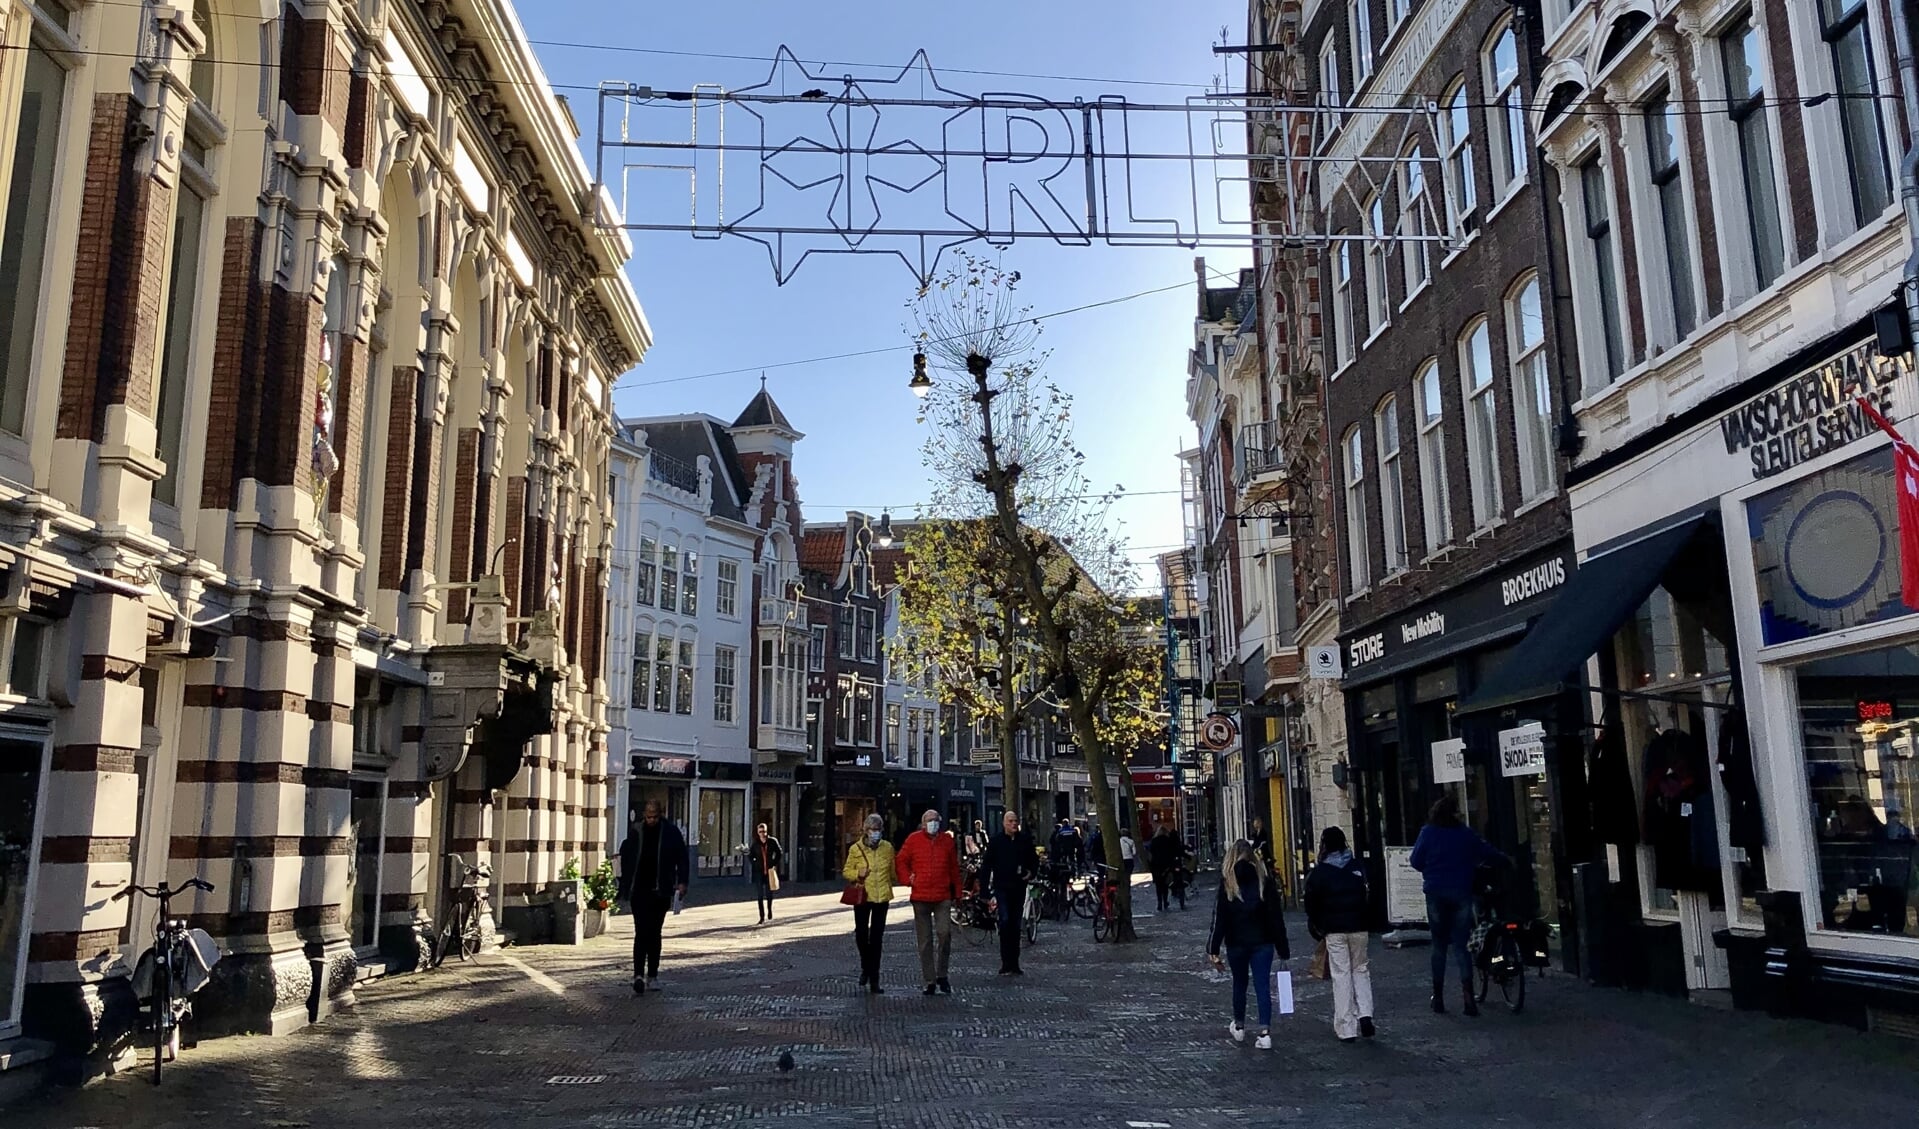 De beste wandelroutes door Haarlem op een rij! 